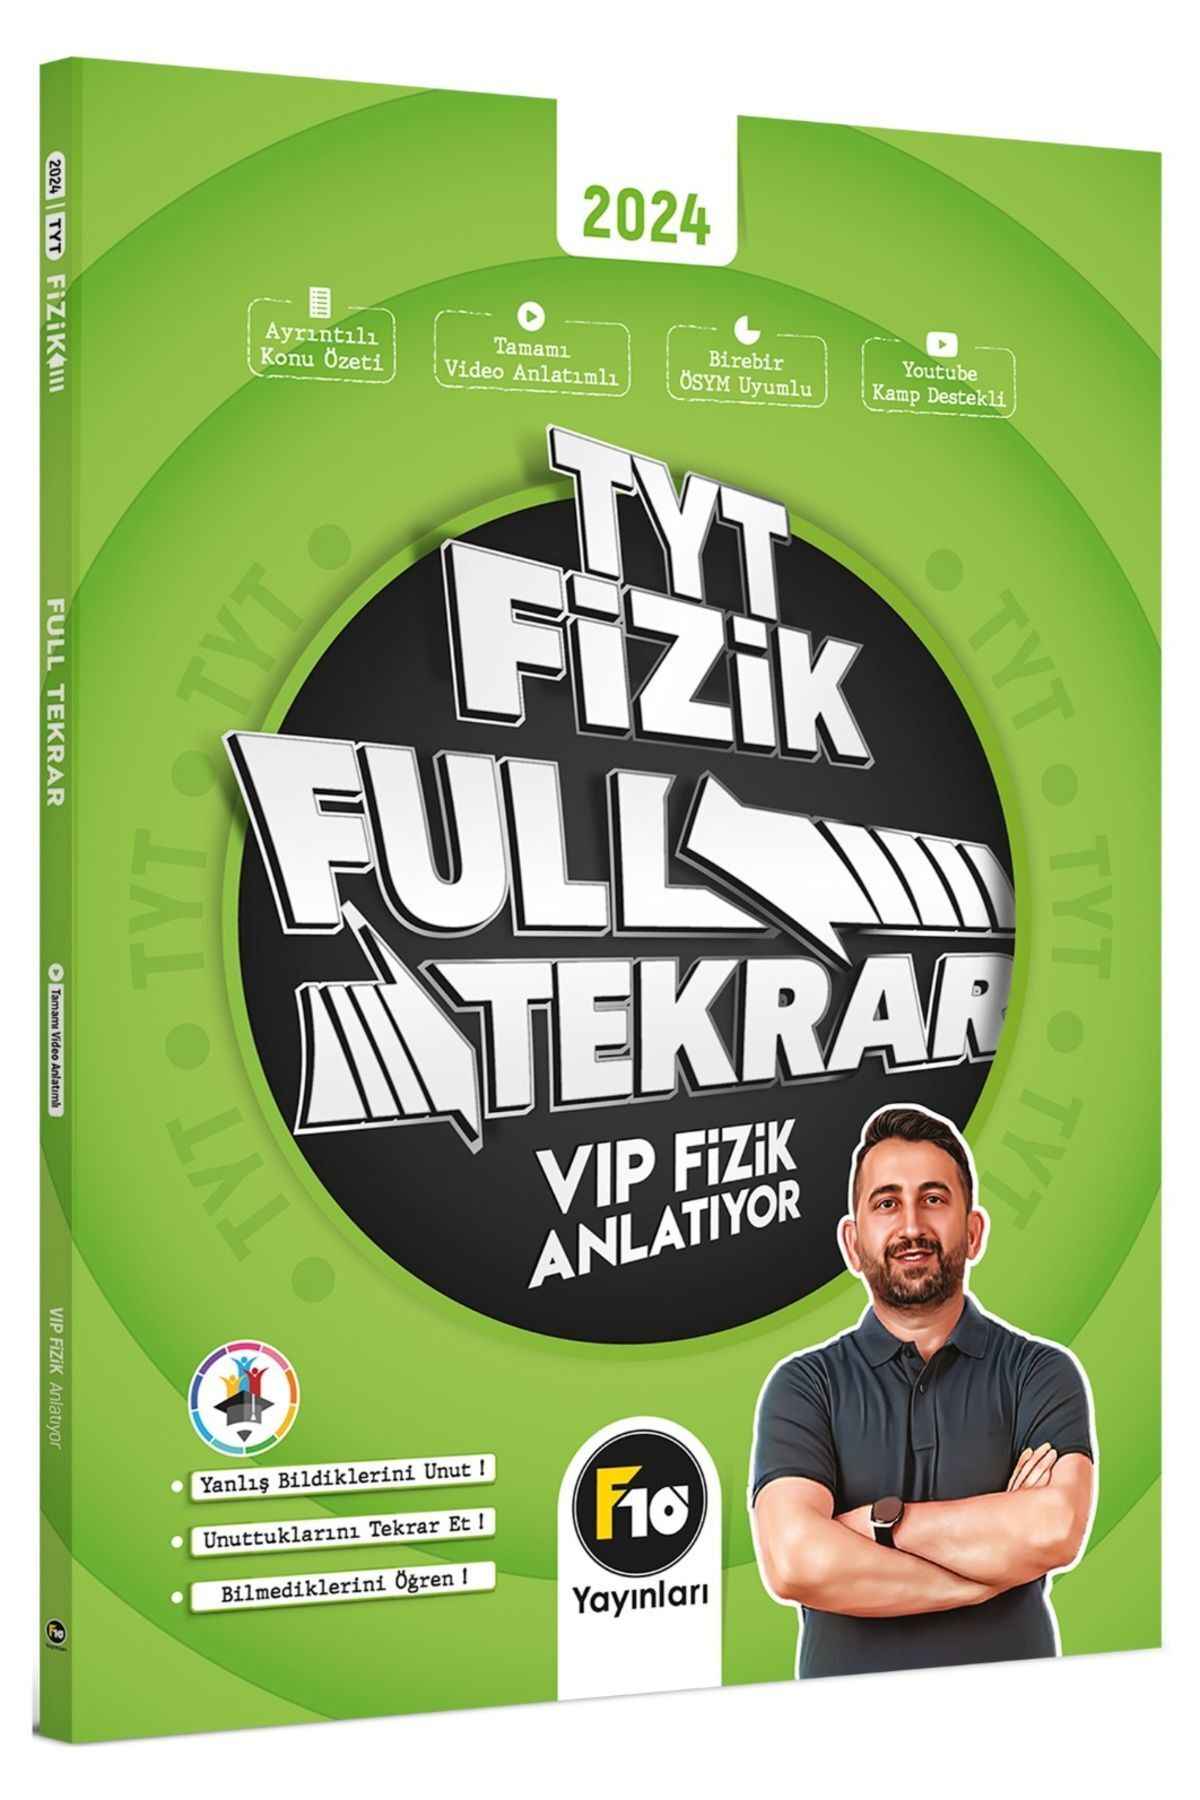 F10 Yayınları Tyt Vip Fizik Full Tekrar Video Ders Kitabı